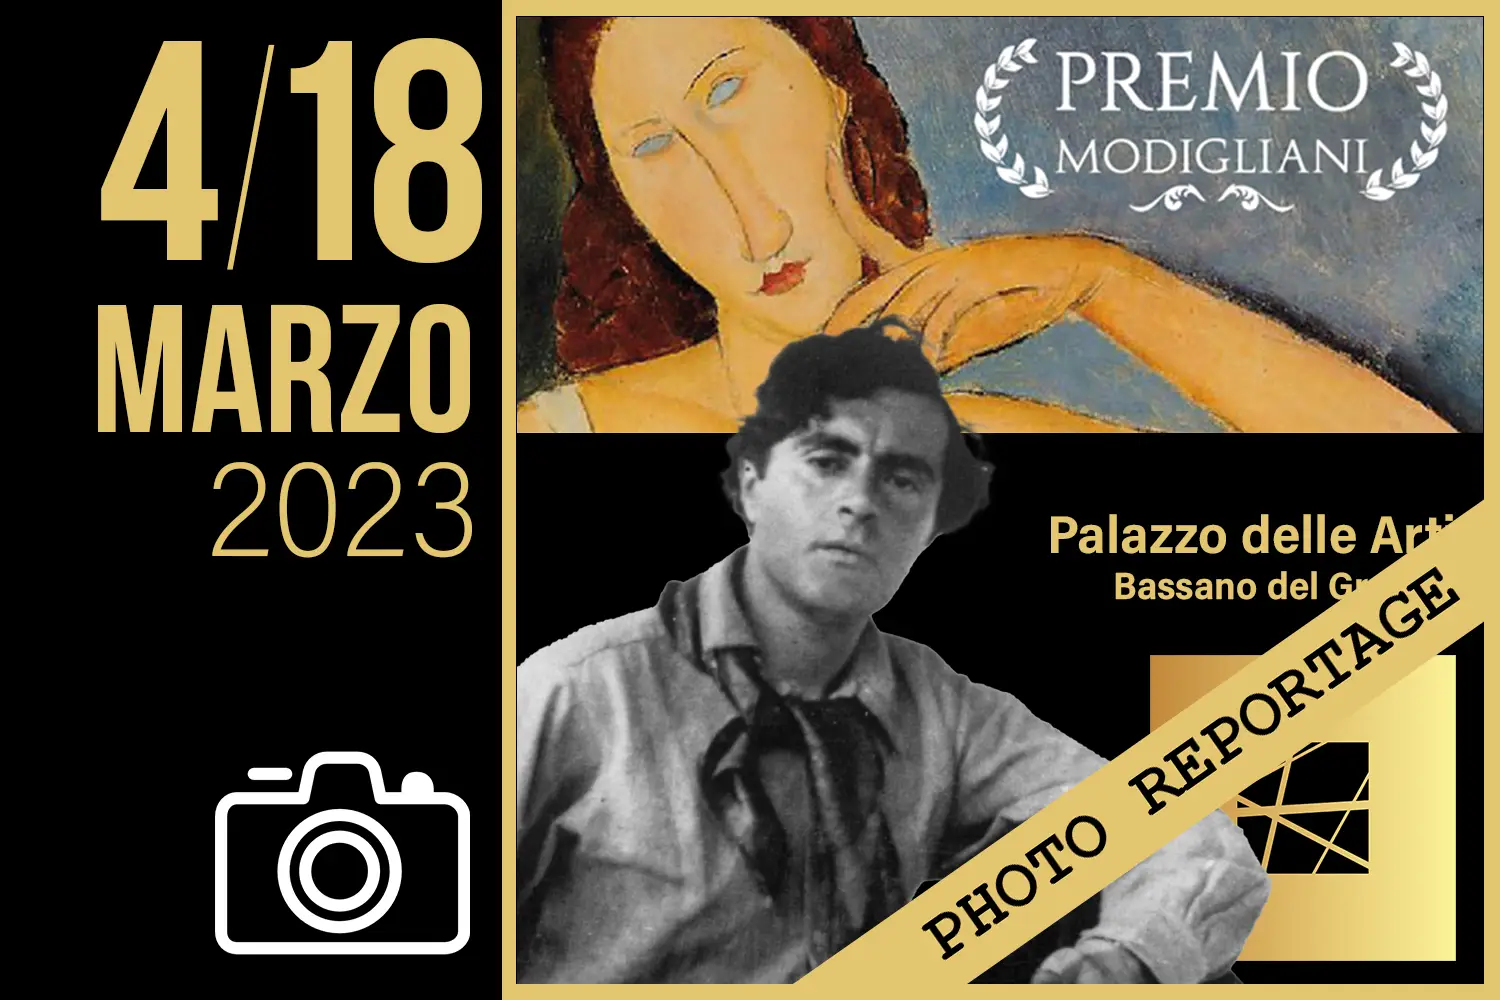 PREMIO MODIGLIANI - Bassano del Grappa - 4/18 marzo 2023